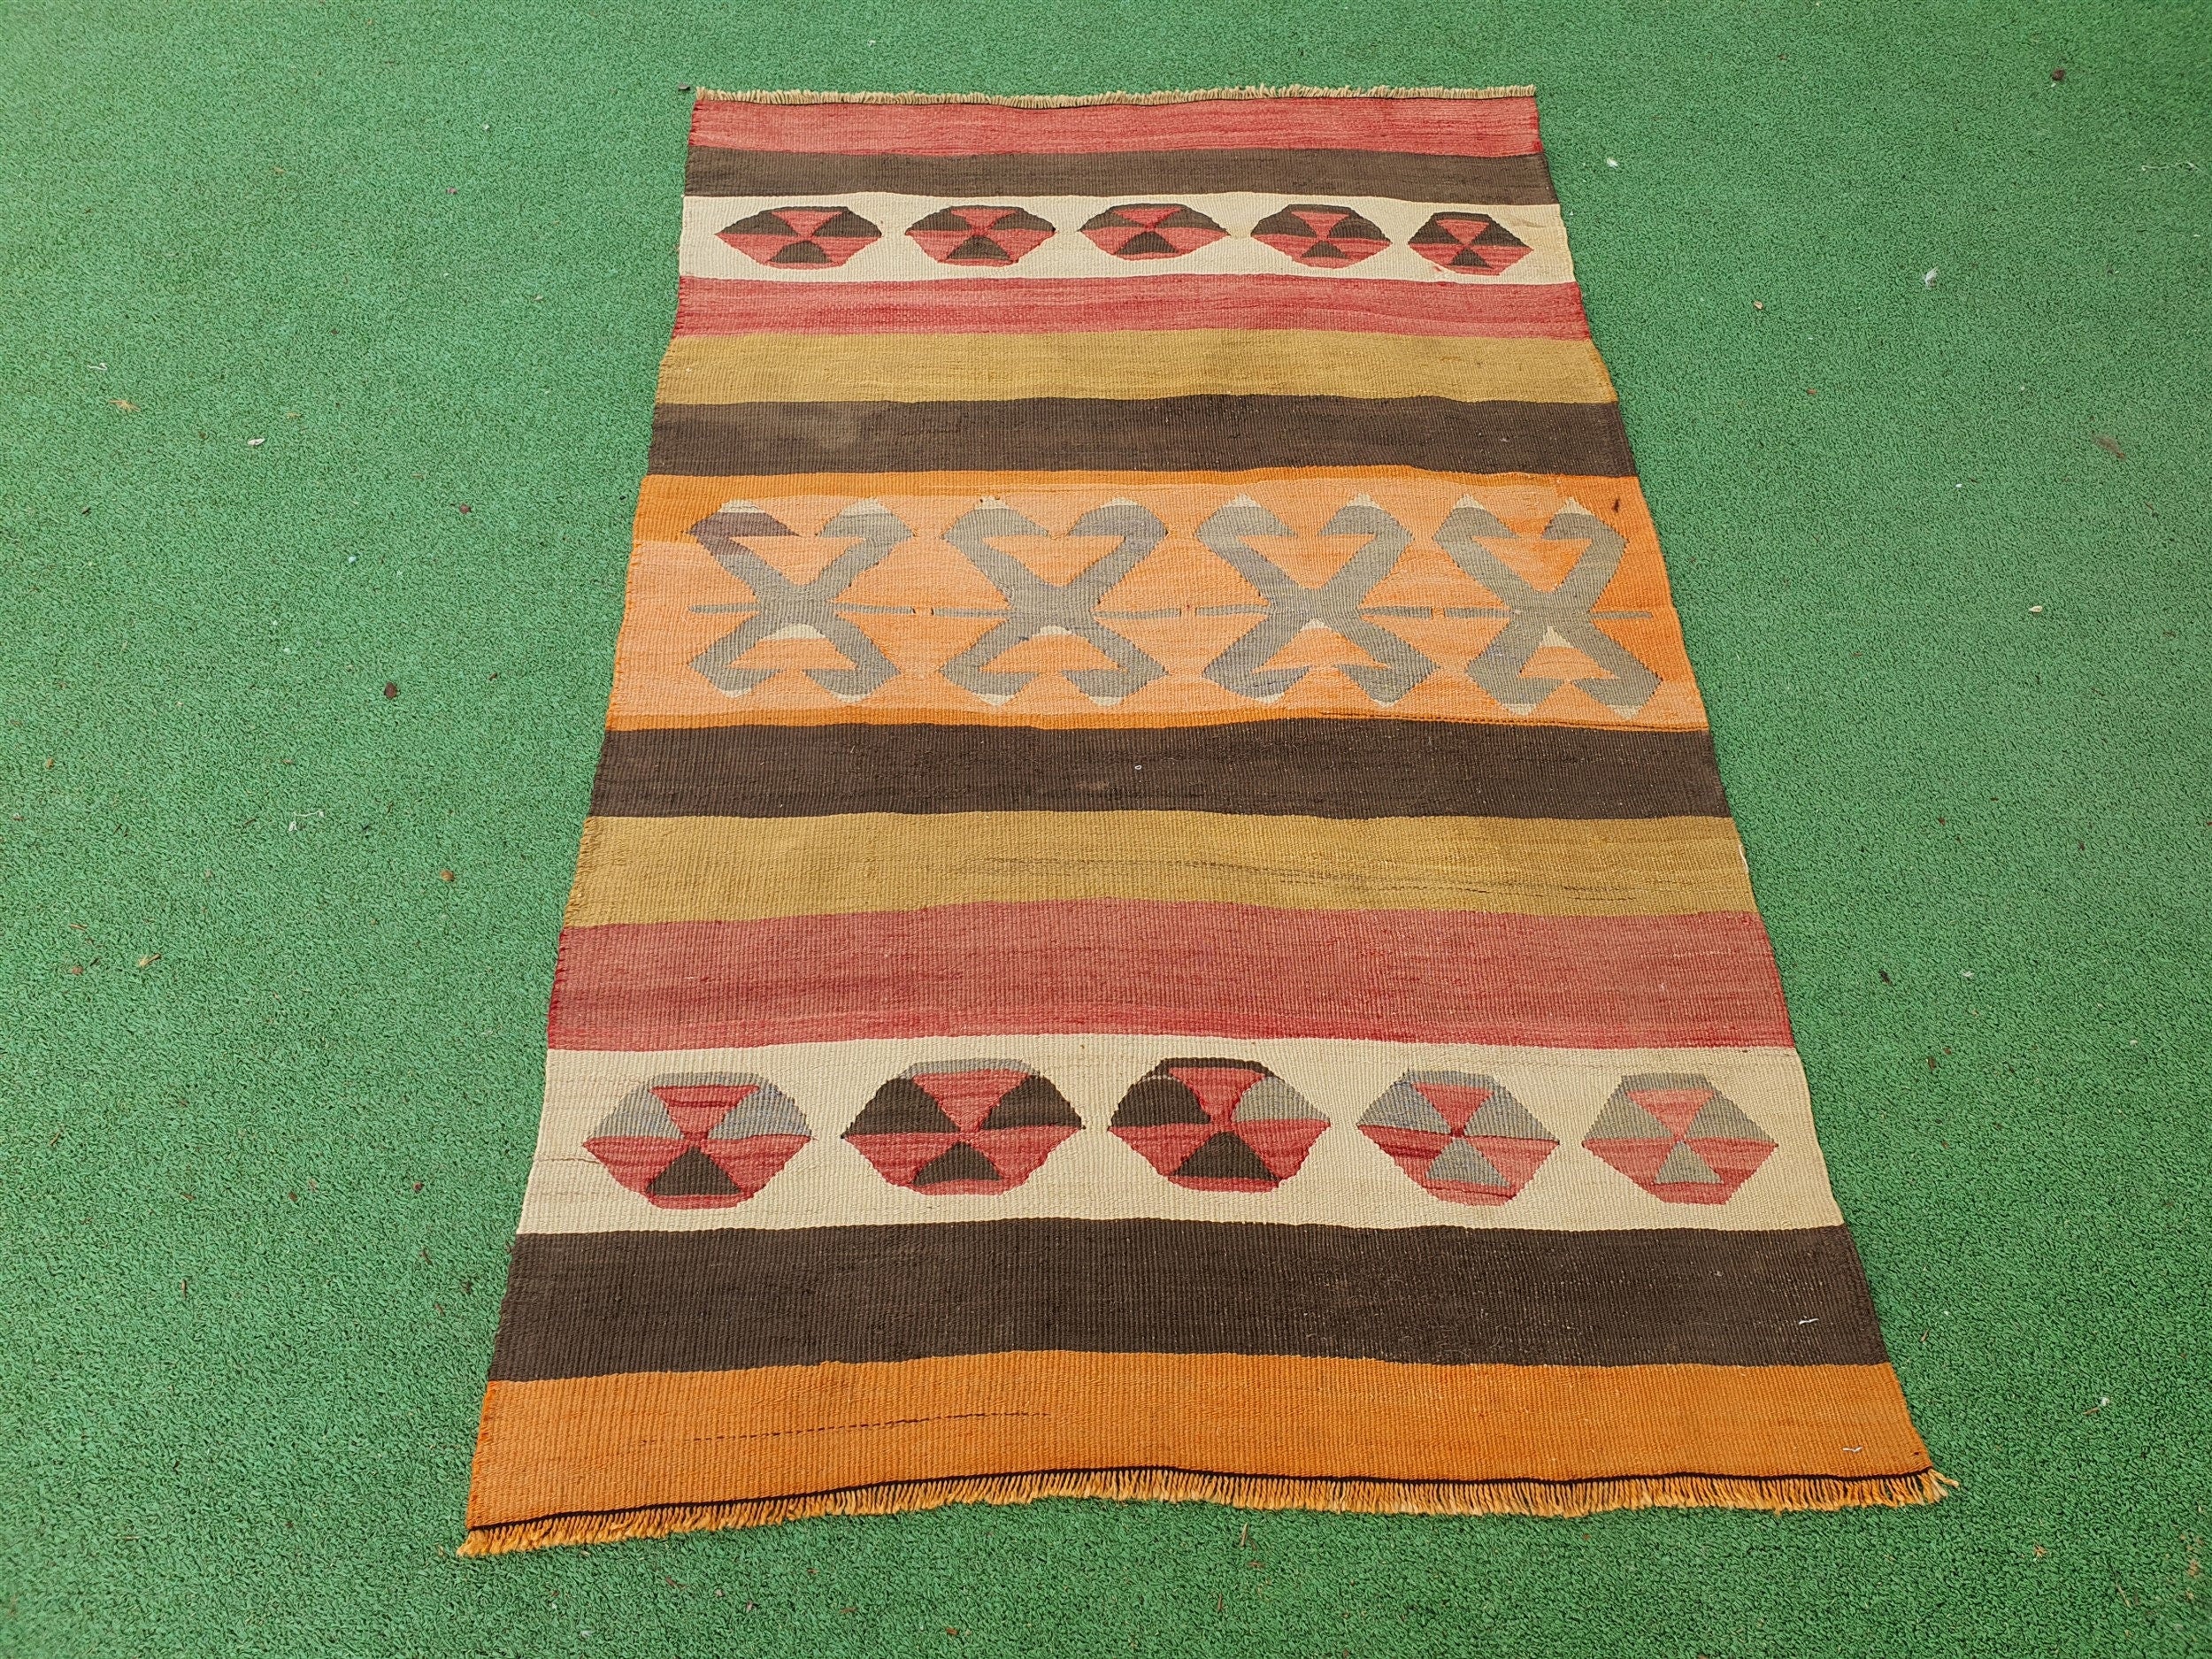 Afyon Turkish Kilim Rug, 3 ft 9 in x 2 ft 4 in Orange Green Beige and Brown Handmade Wool Flatweave Rug